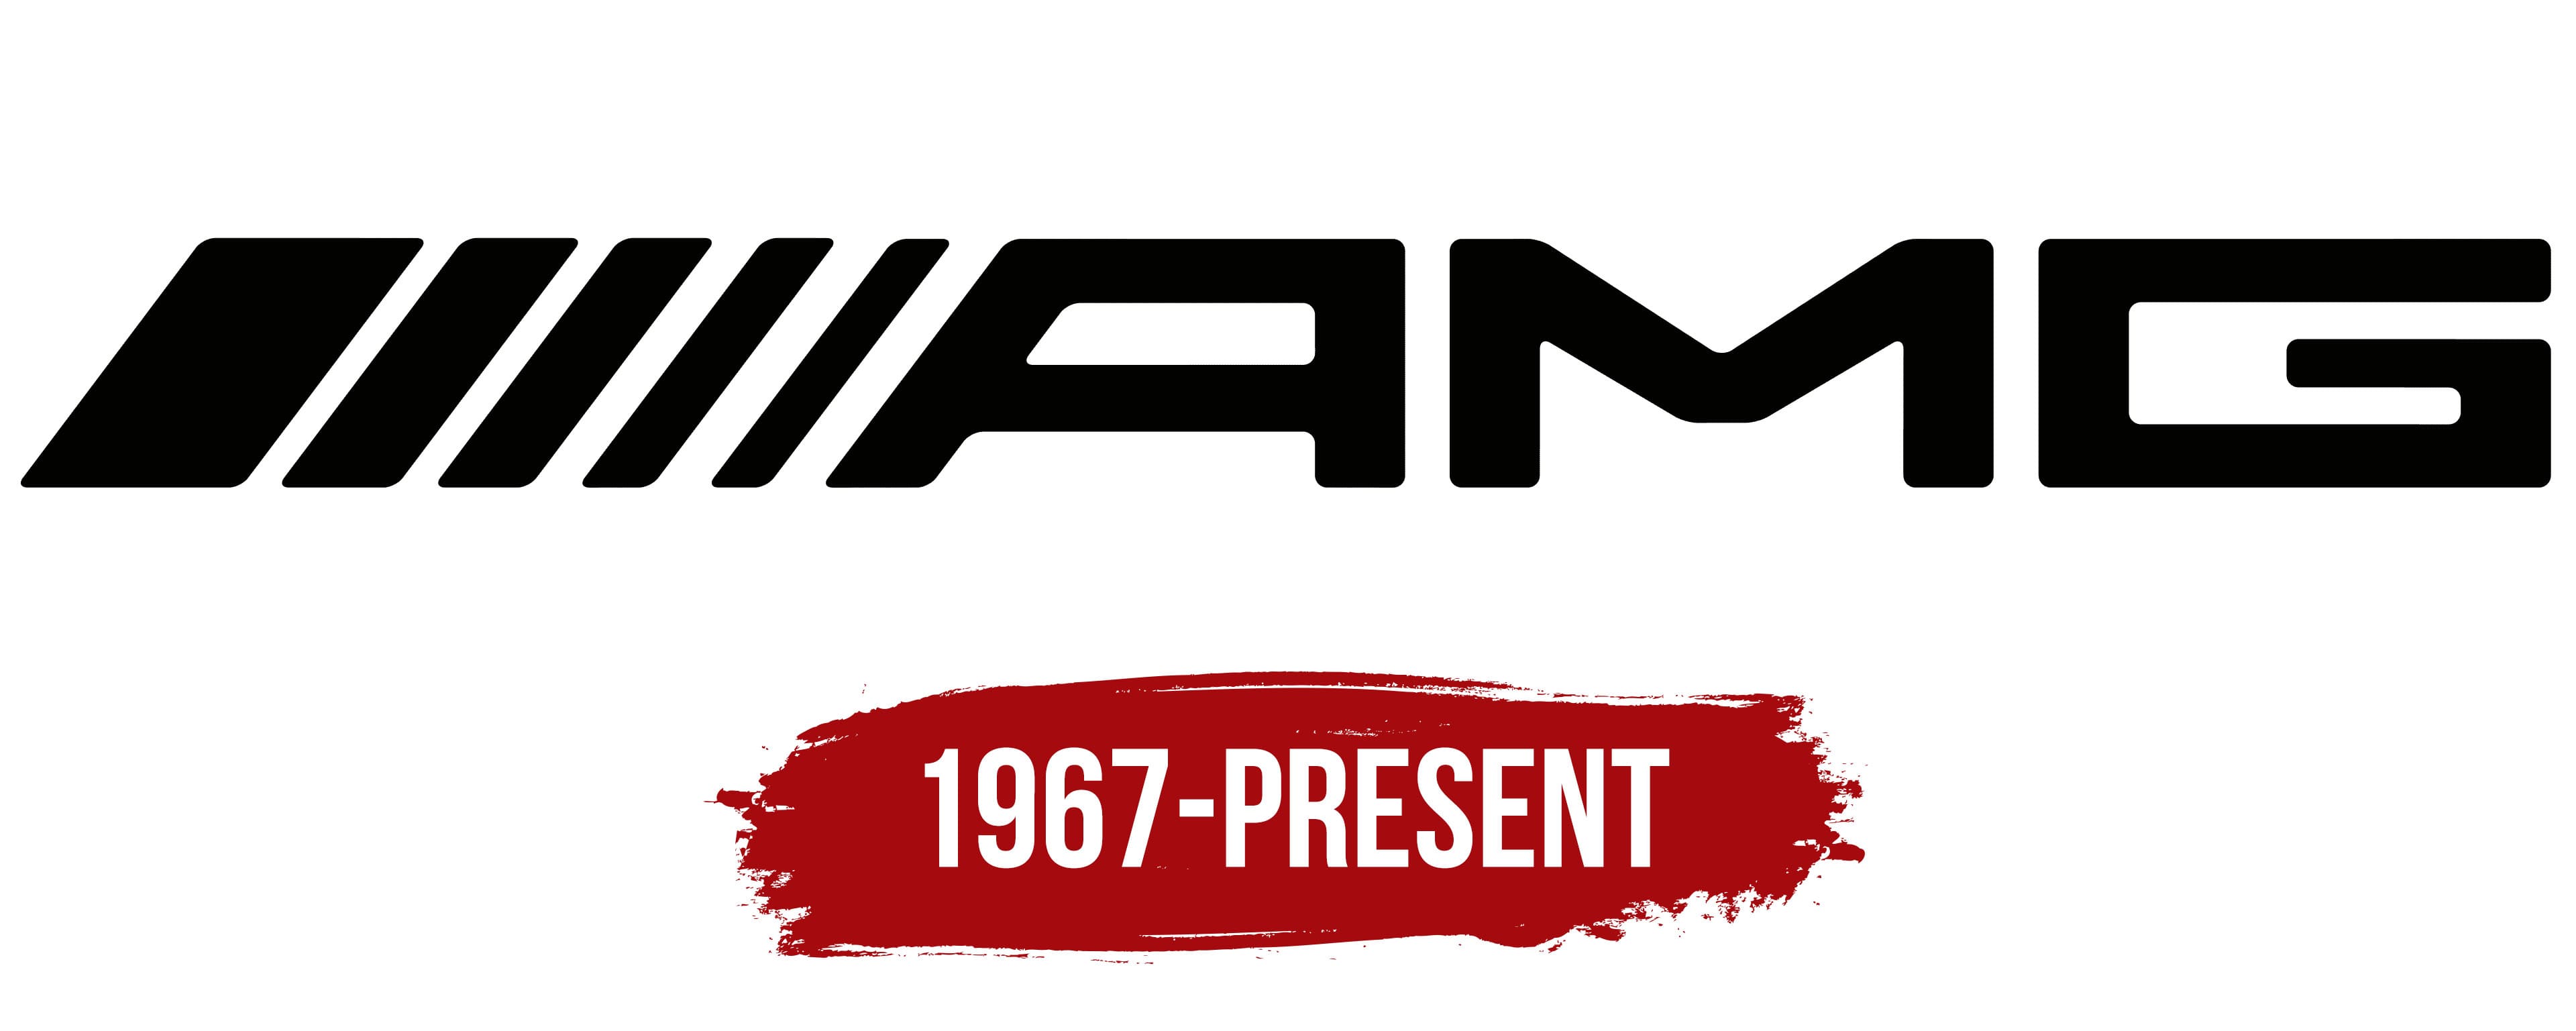 Archivo:AMG logo.svg - Wikipedia, la enciclopedia libre